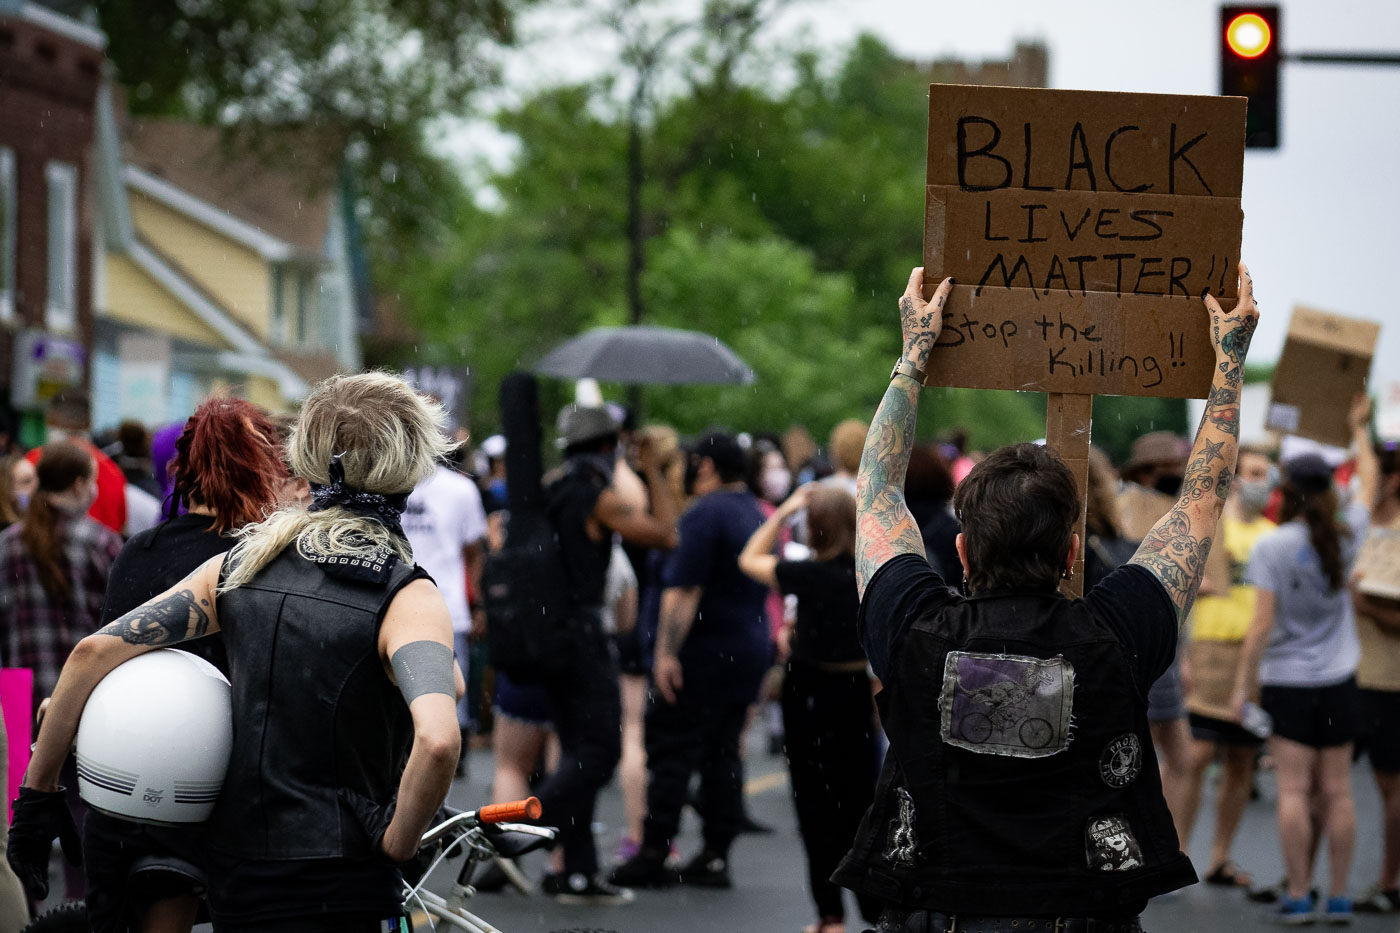 Proteter holds up a Black Lives Matter protest sign